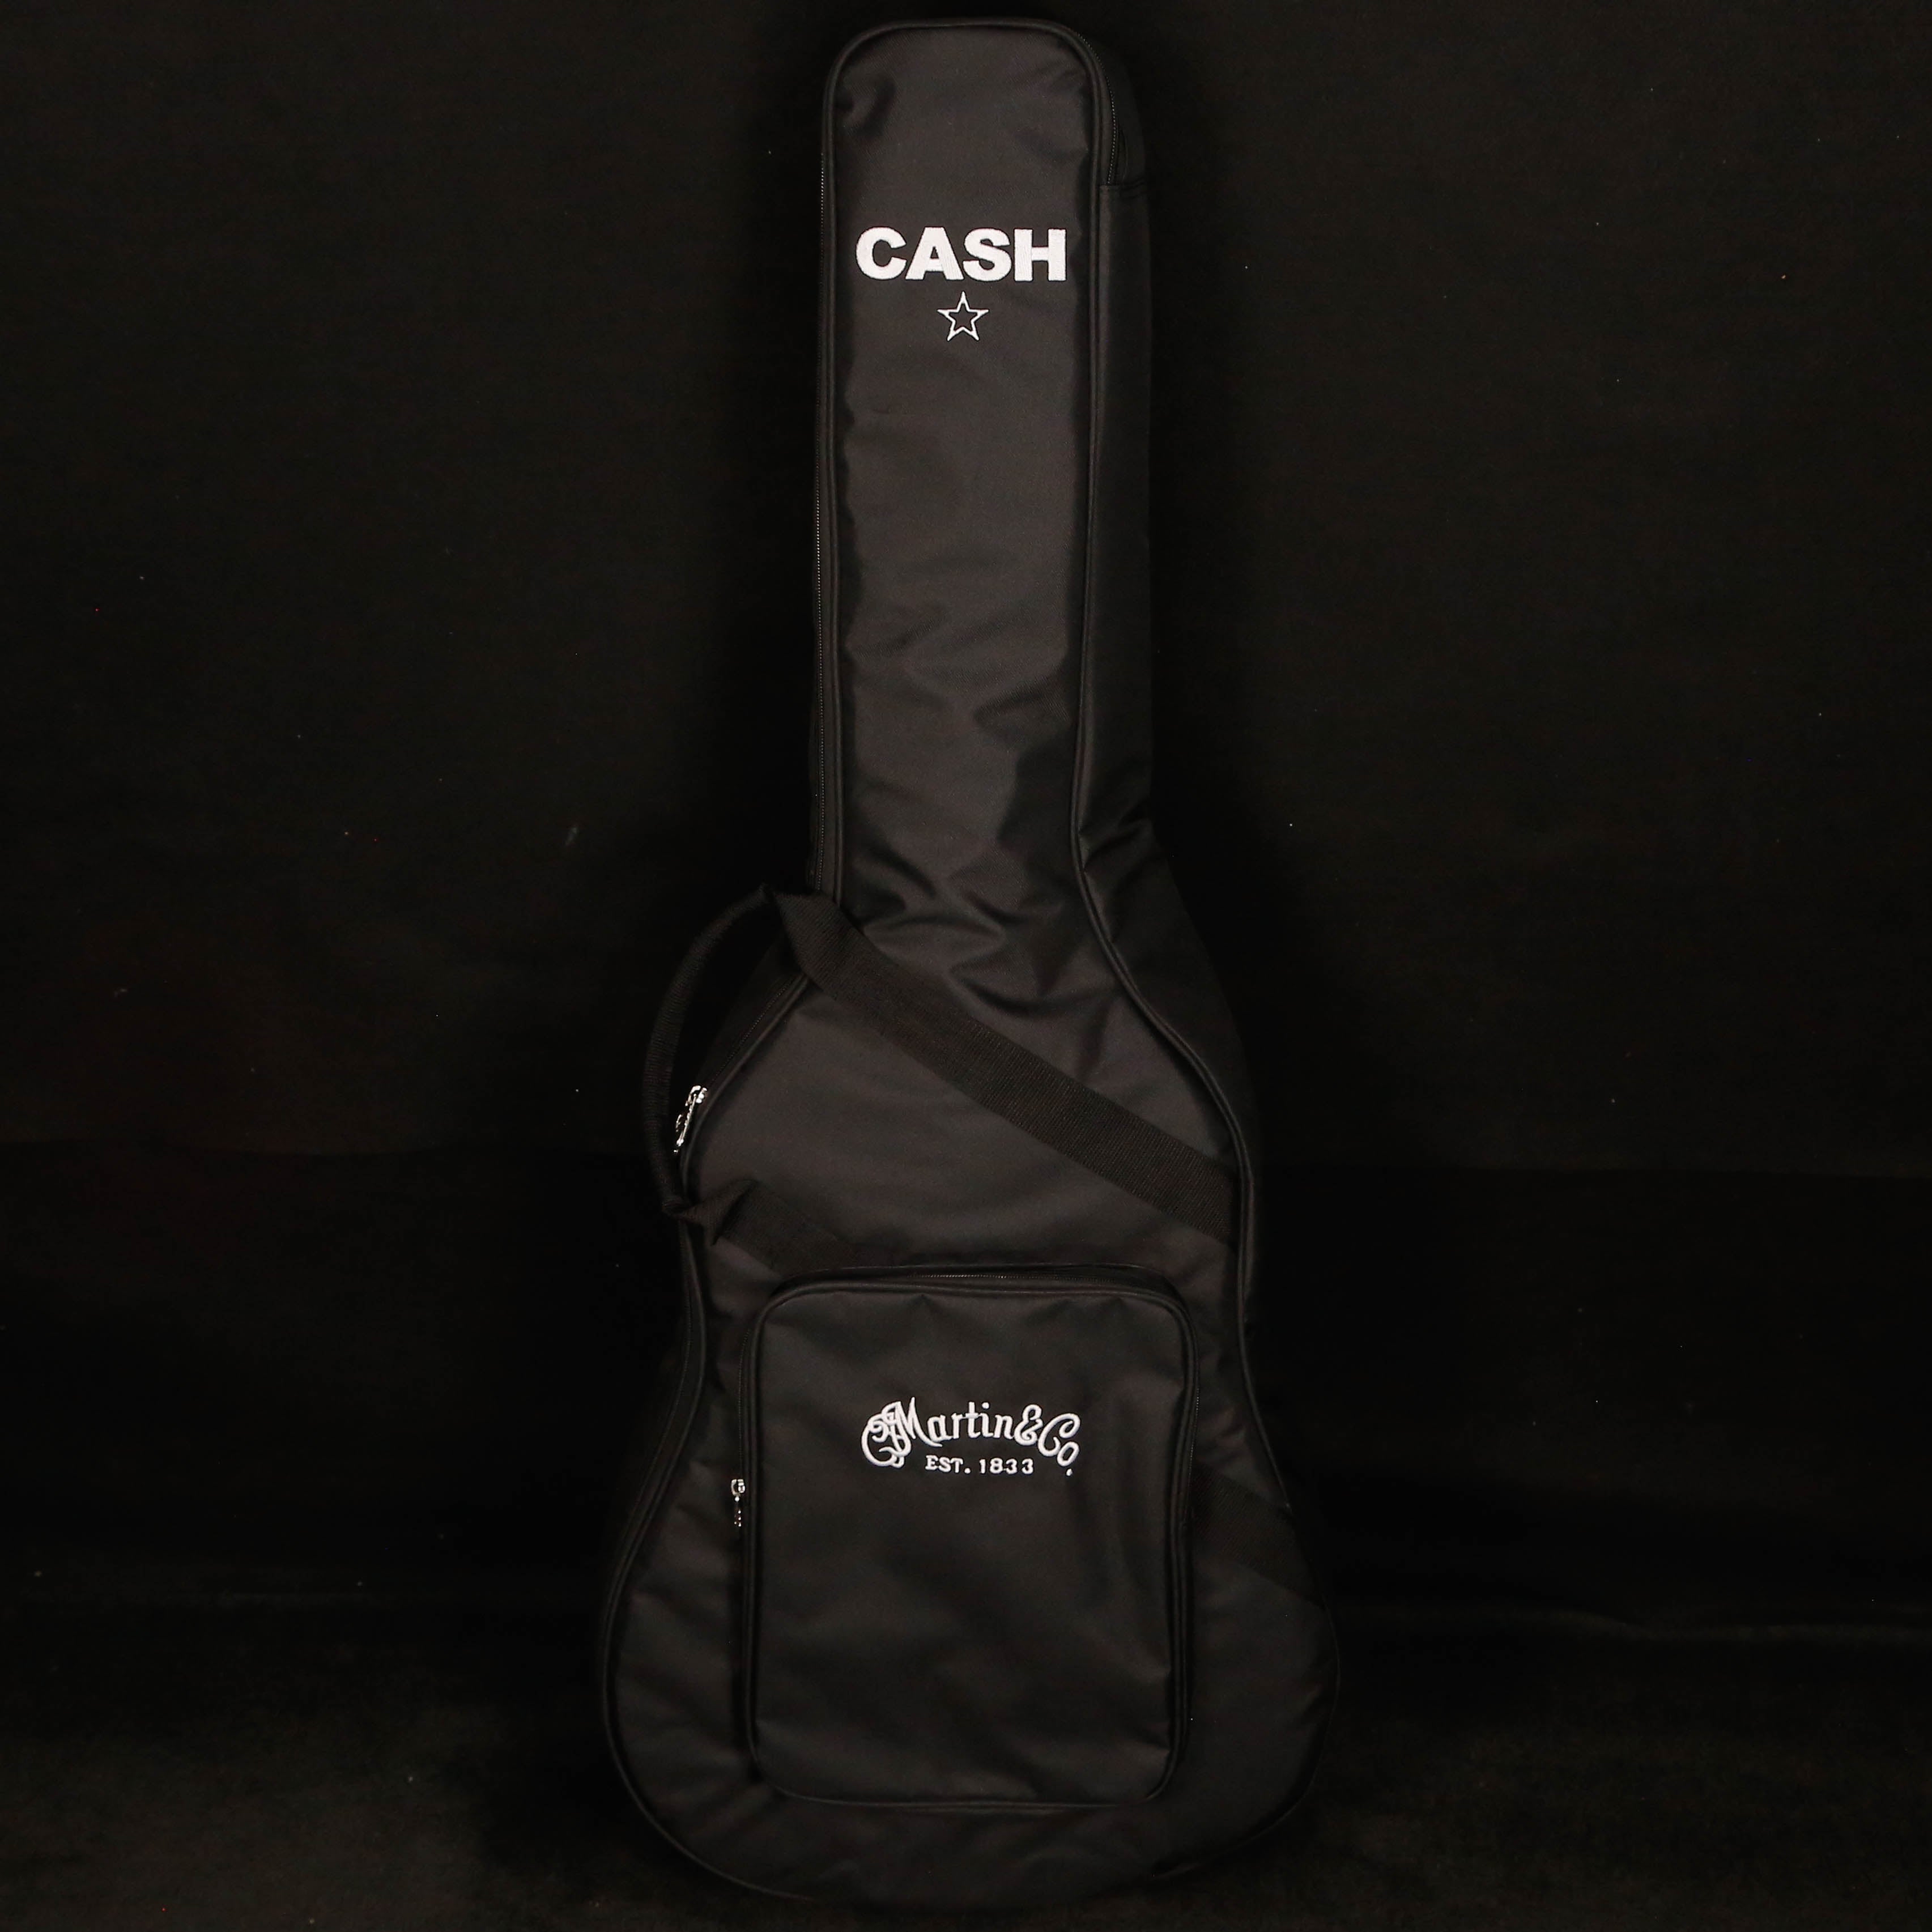 Martin DX Johnny Cash Custom Signature Editions (Gig Bag Inc)